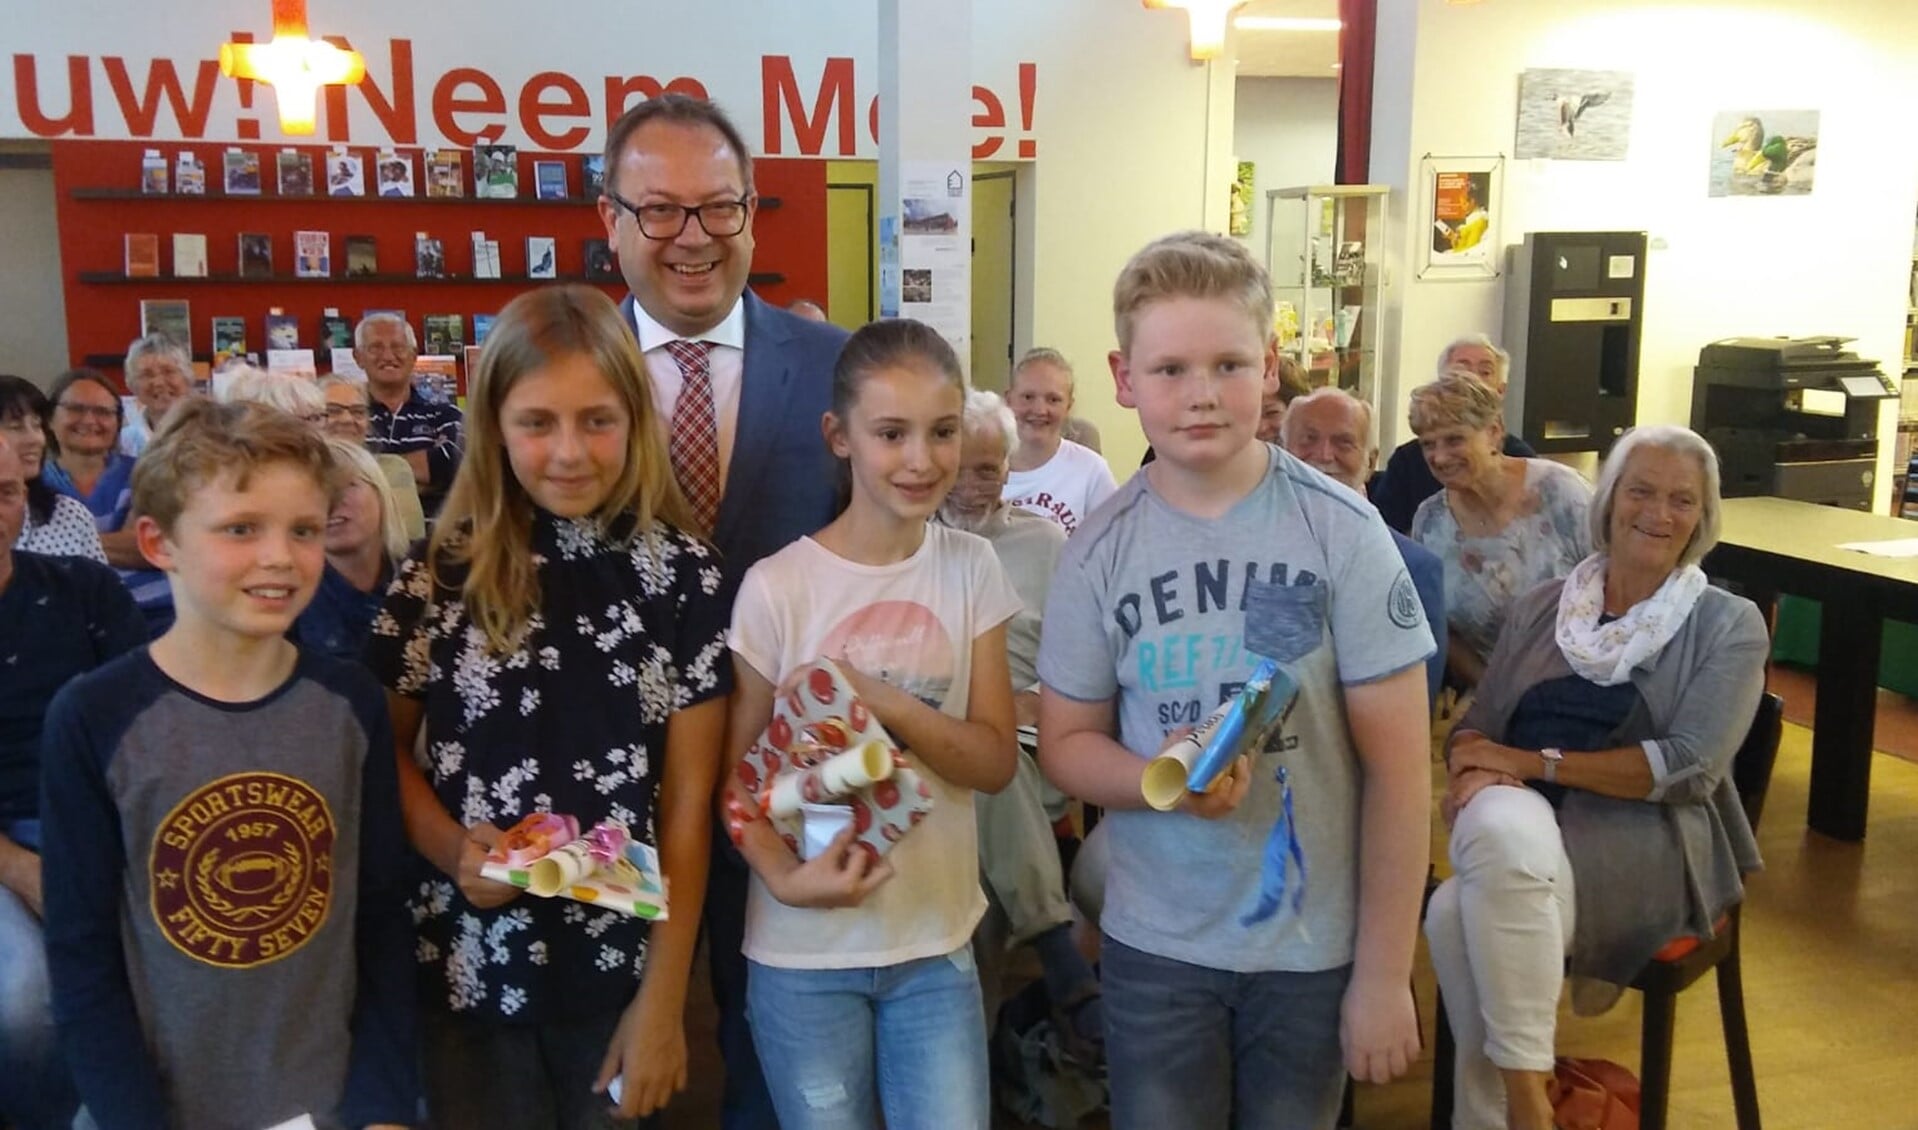 Burgemeester Van Benthem met de winnaars van de basisschool. 